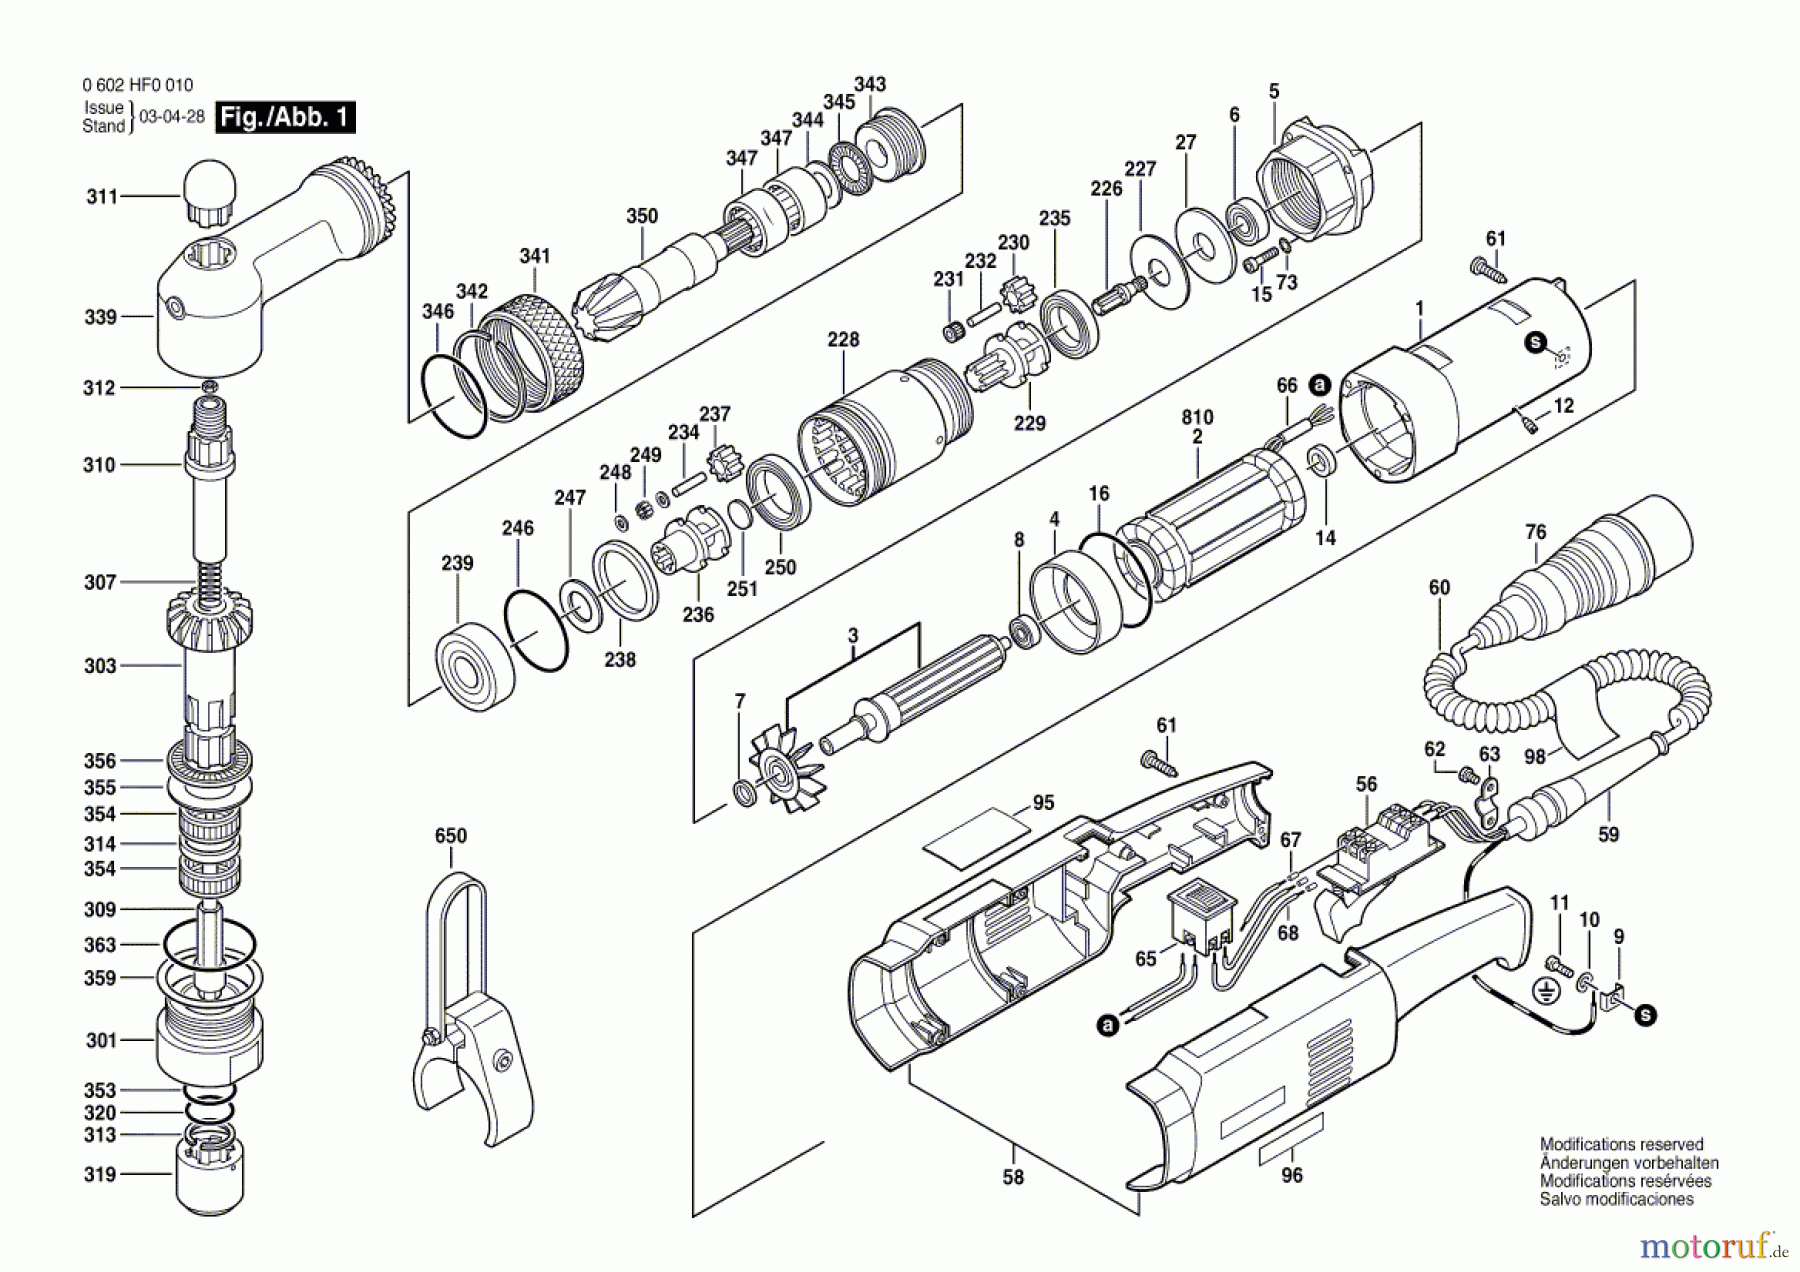  Bosch Werkzeug Winkelschrauber GR.55 Seite 1